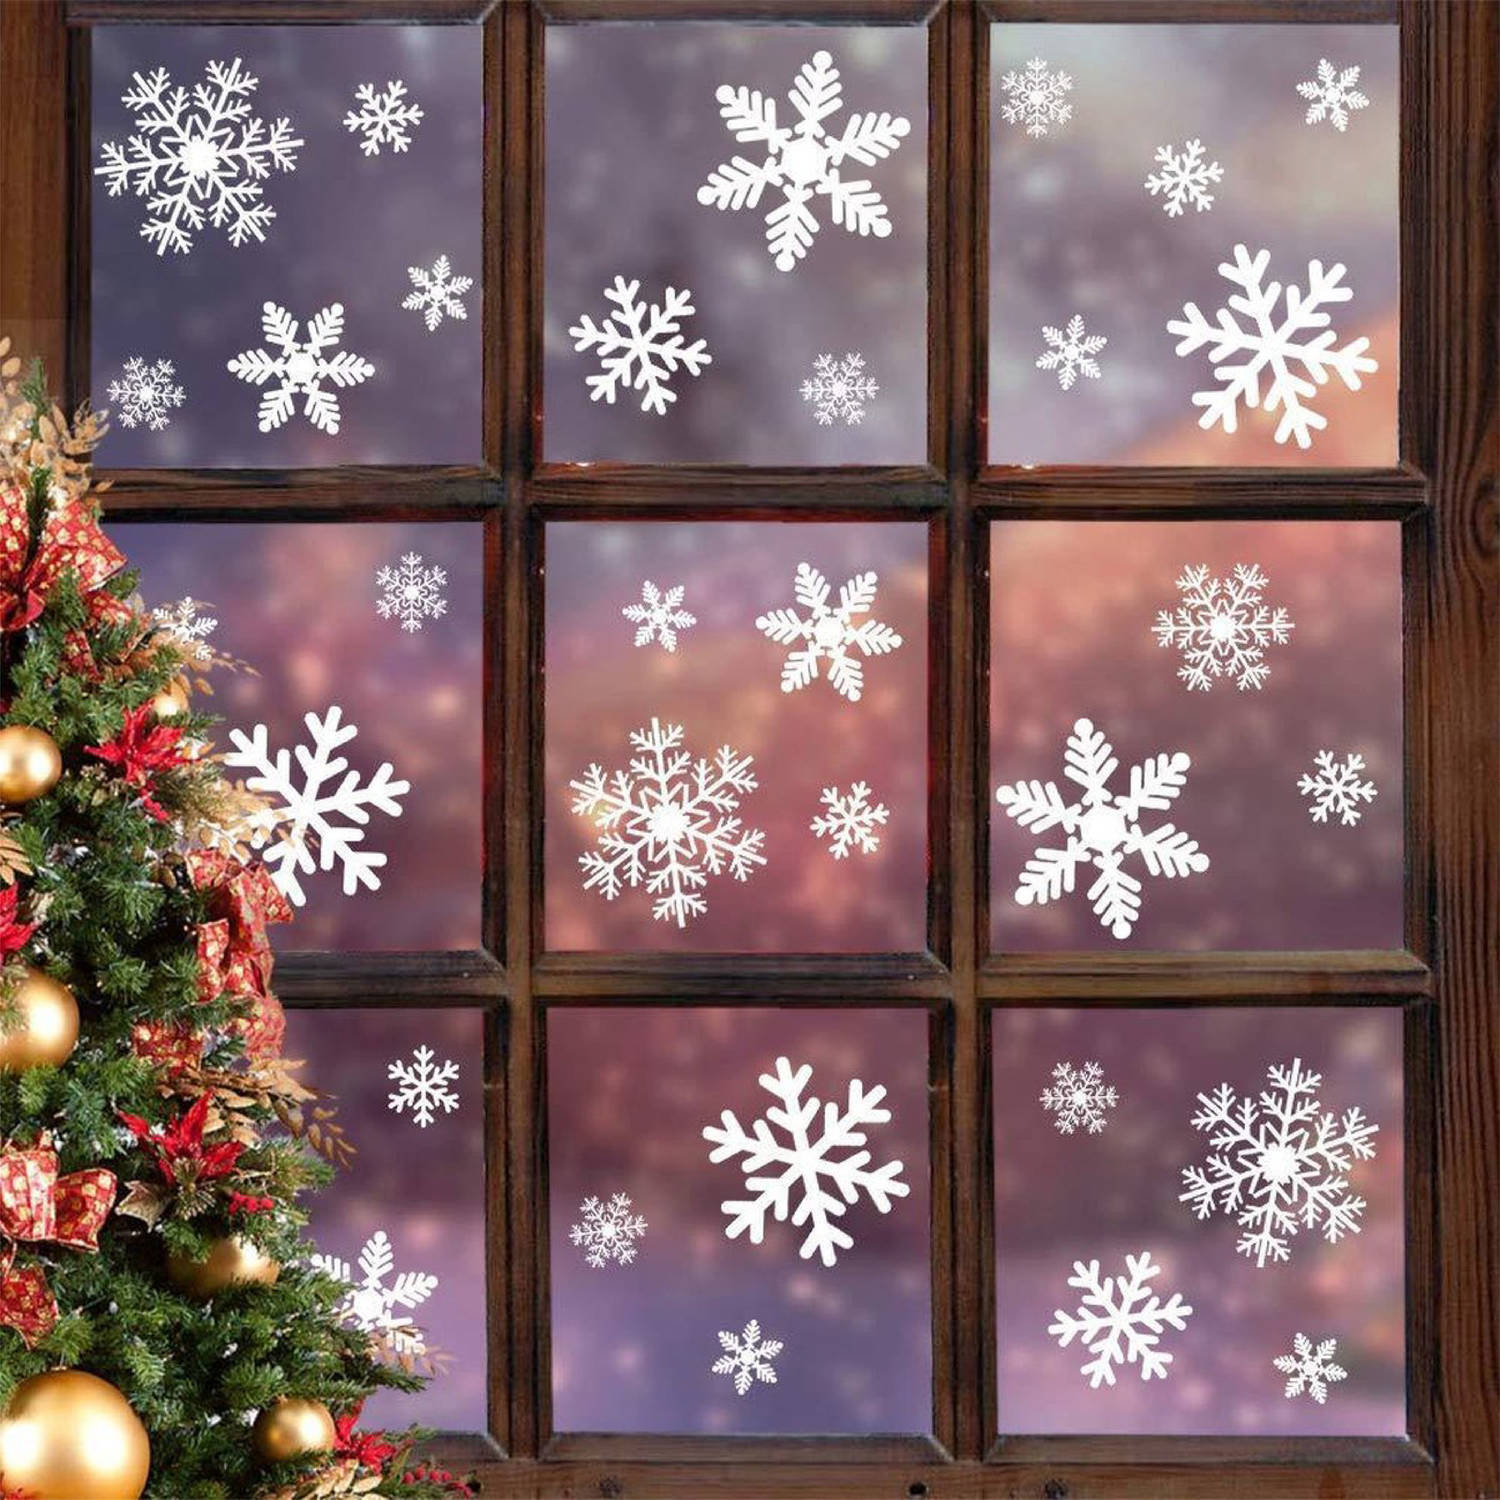 Fissaly® 270 Stickers Sneeuwvlokken Winter & Kerst Raam Decoratie Kerstversiering Voor Binnen Raamst